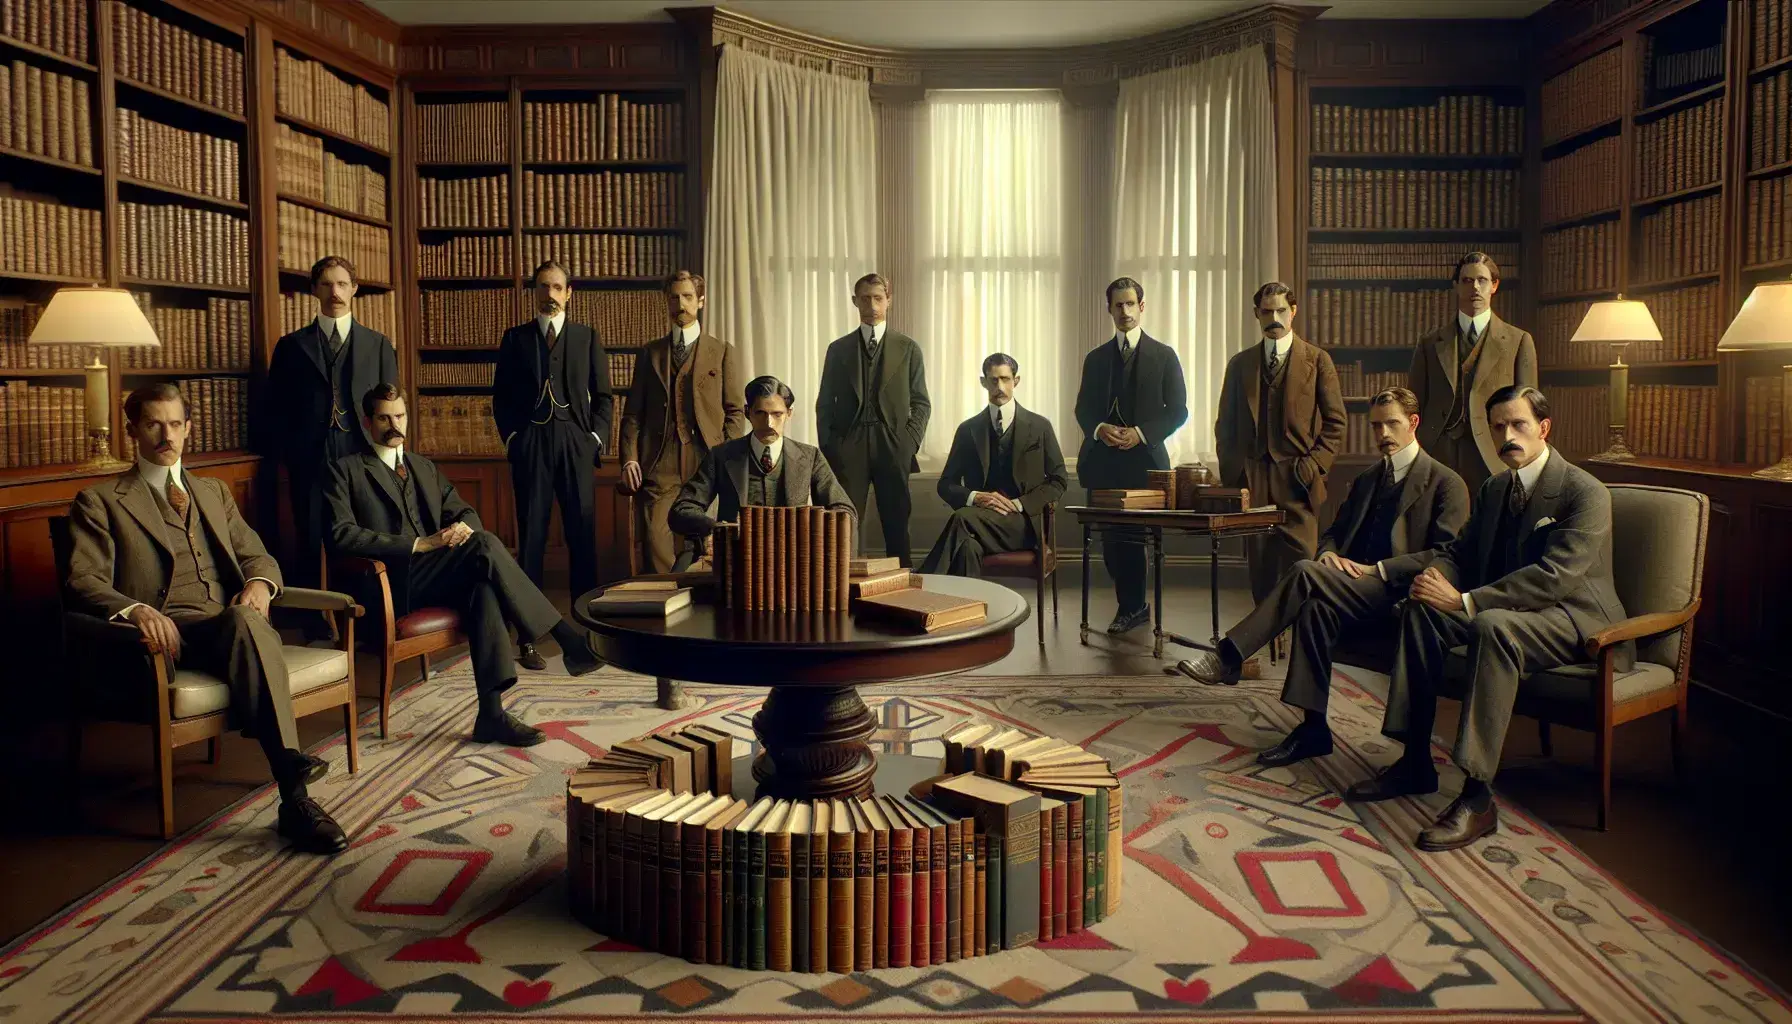 Grupo de diez hombres con trajes de los años 20 y 30 posando en un salón clásico con libros sobre una mesa redonda y estantería al fondo.